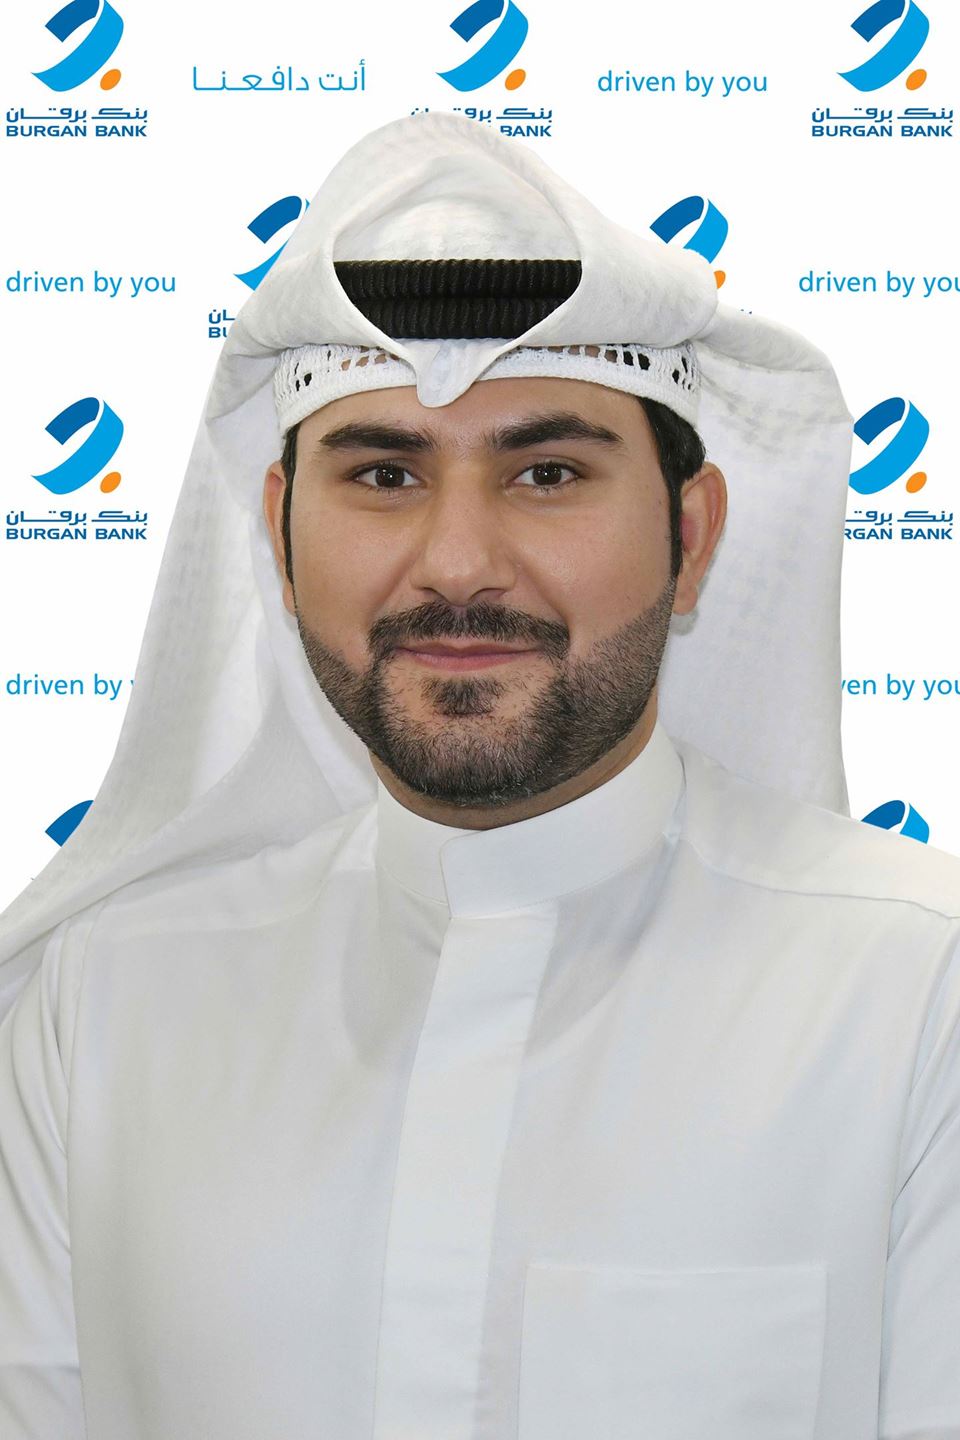 Mr. Bashar Khalid Al-Qattan